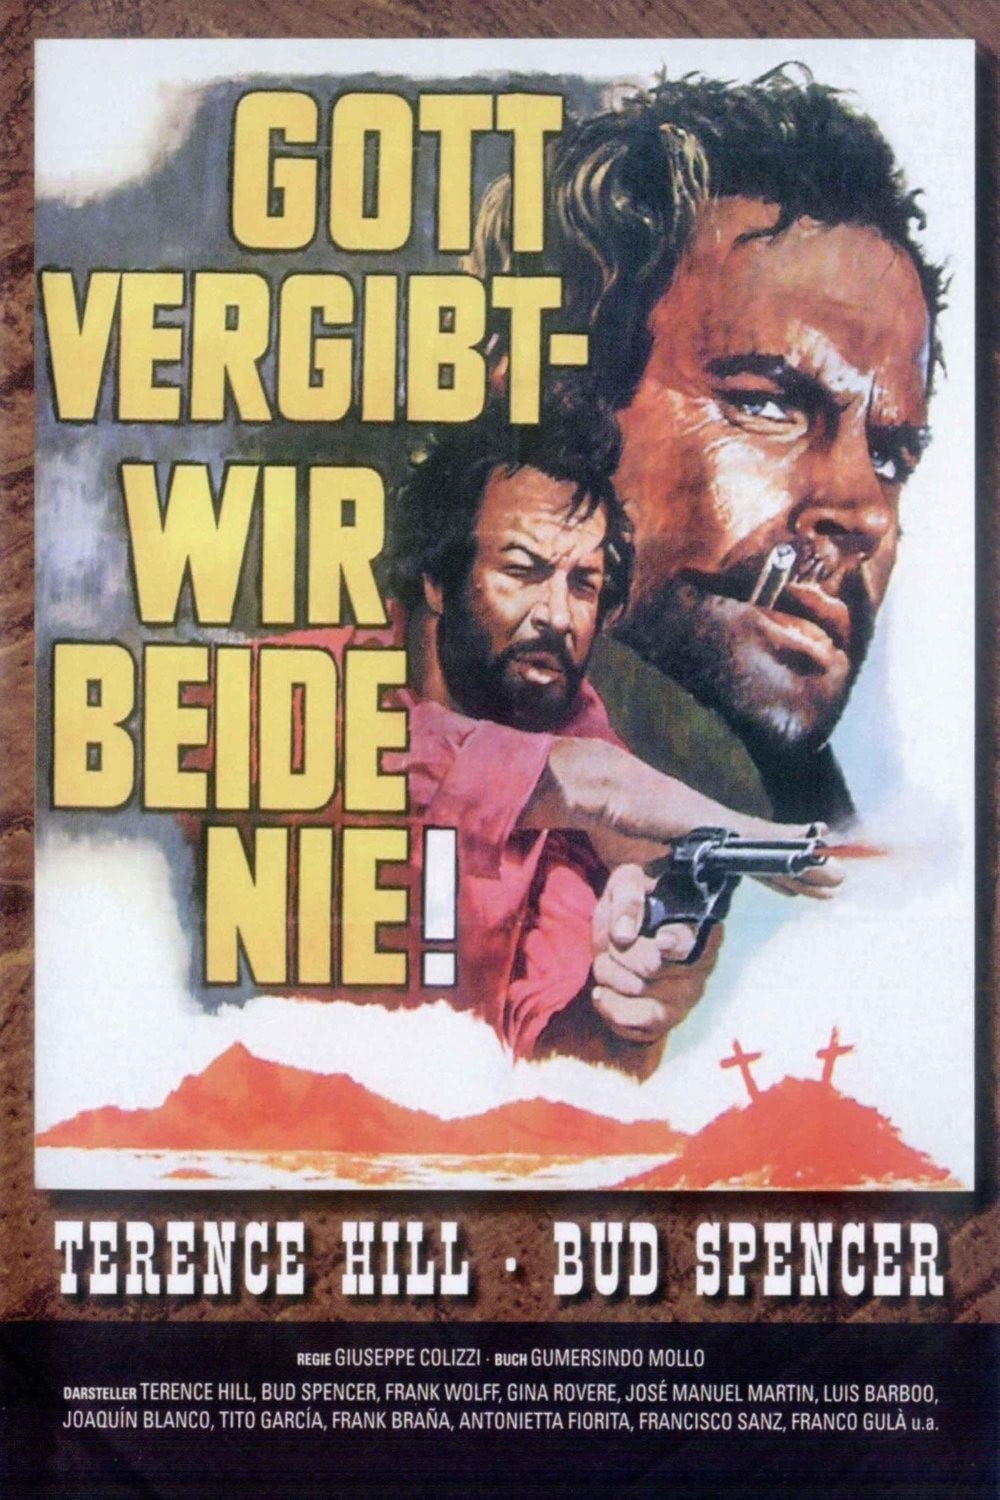 Plakat von "Gott vergibt - Django nie!"